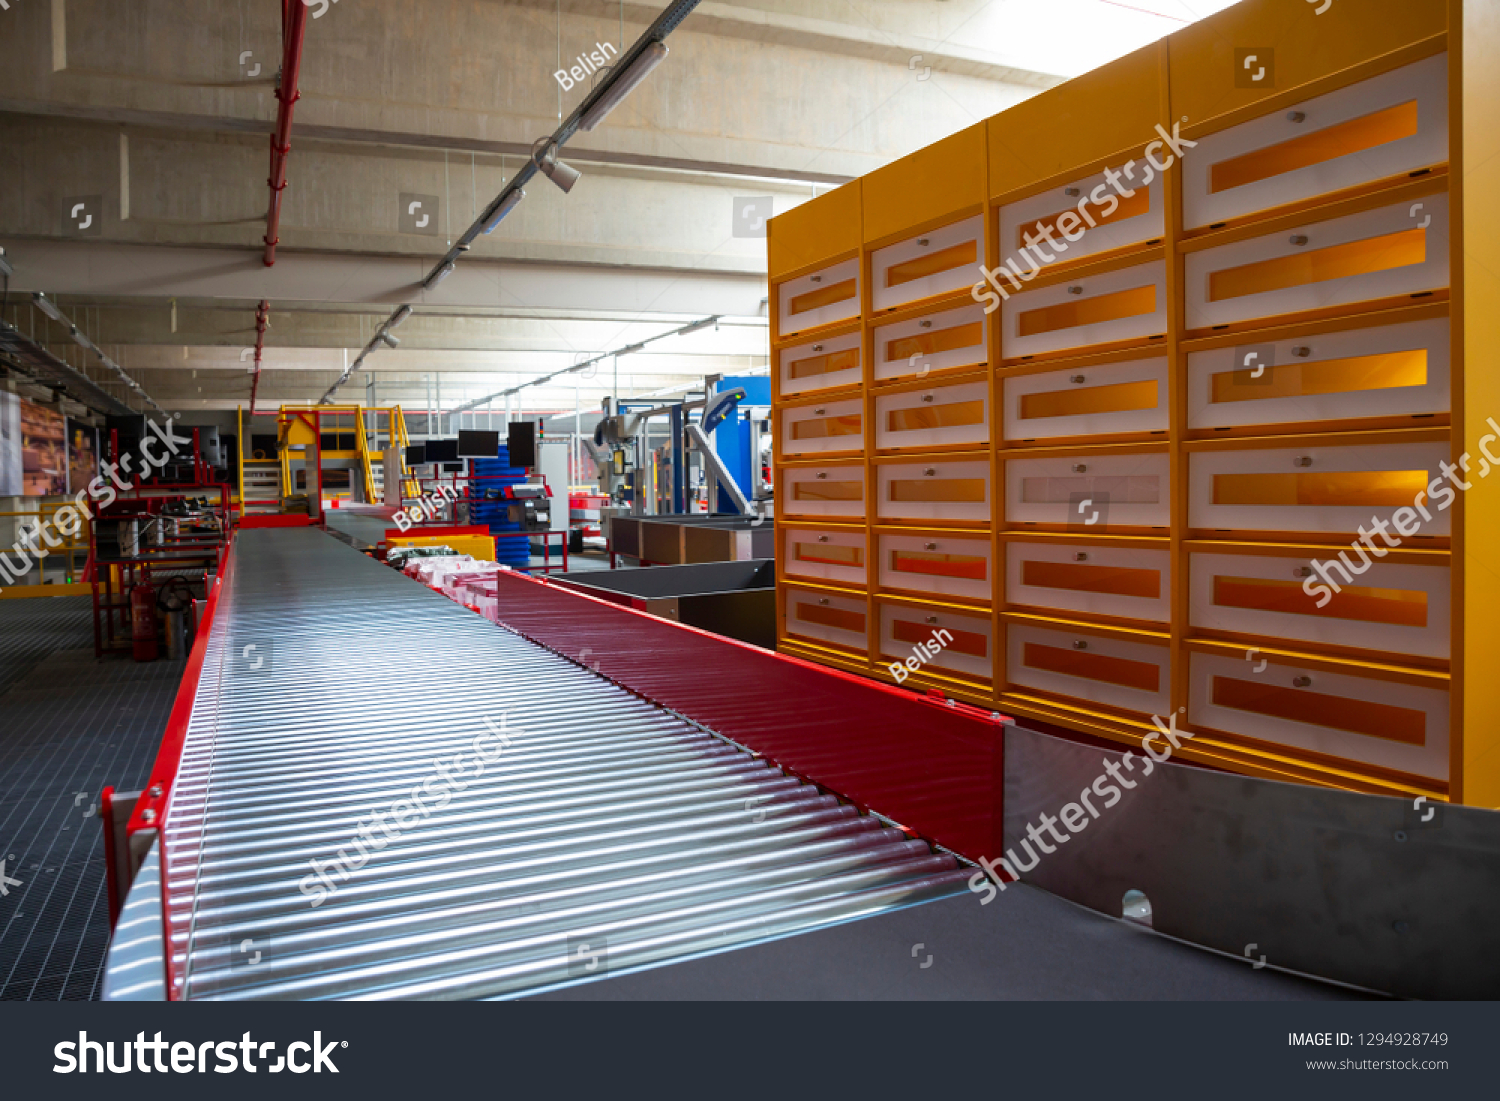 Empty conveyor sorting belt at distribution warehouse. Distribution hub for sorting packages and parcels delivered by air transportation. #1294928749